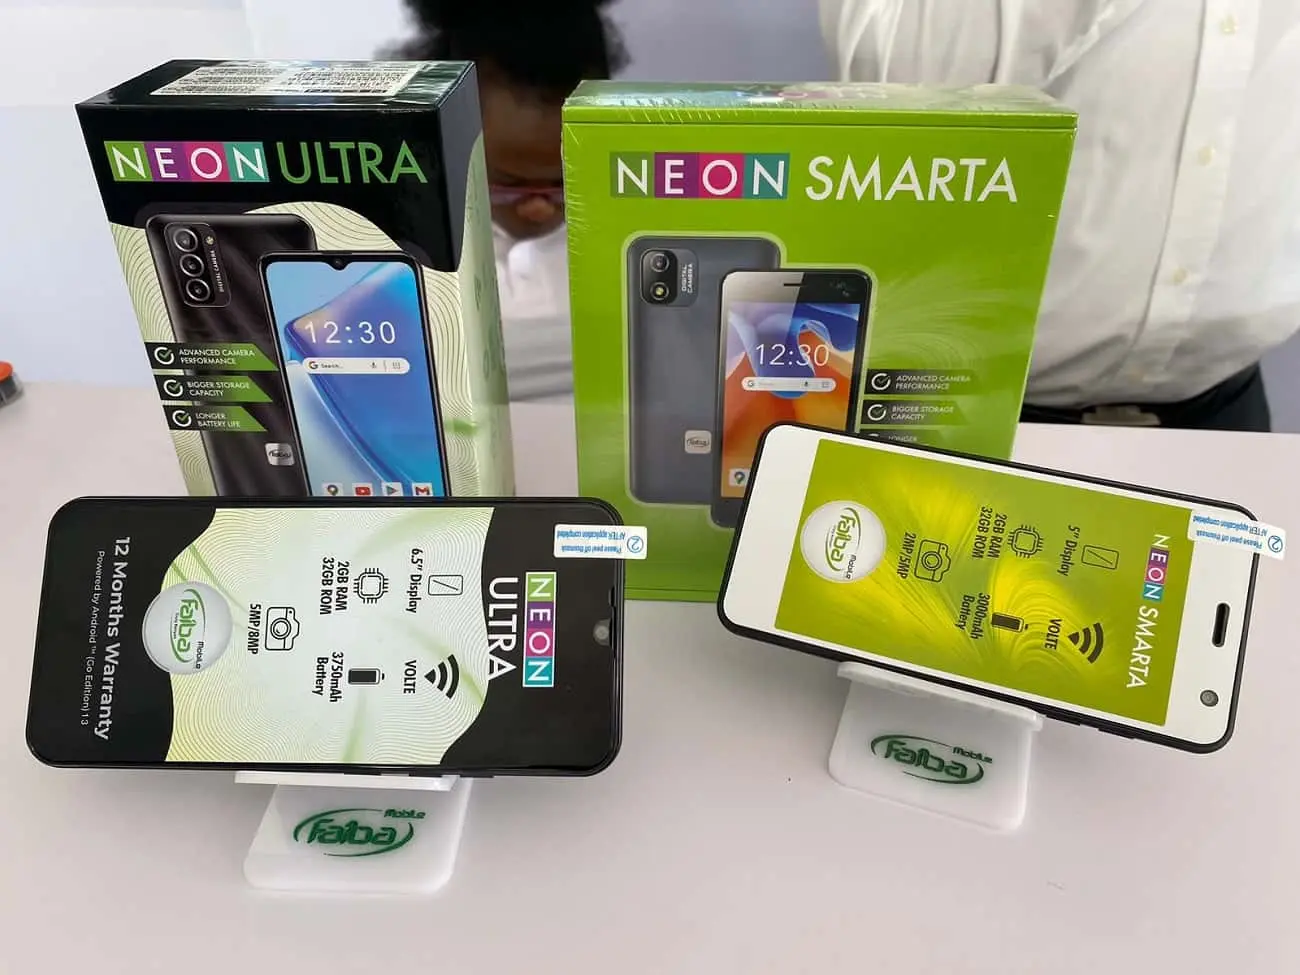 Neon Smarta and Neona Ultra EADAK